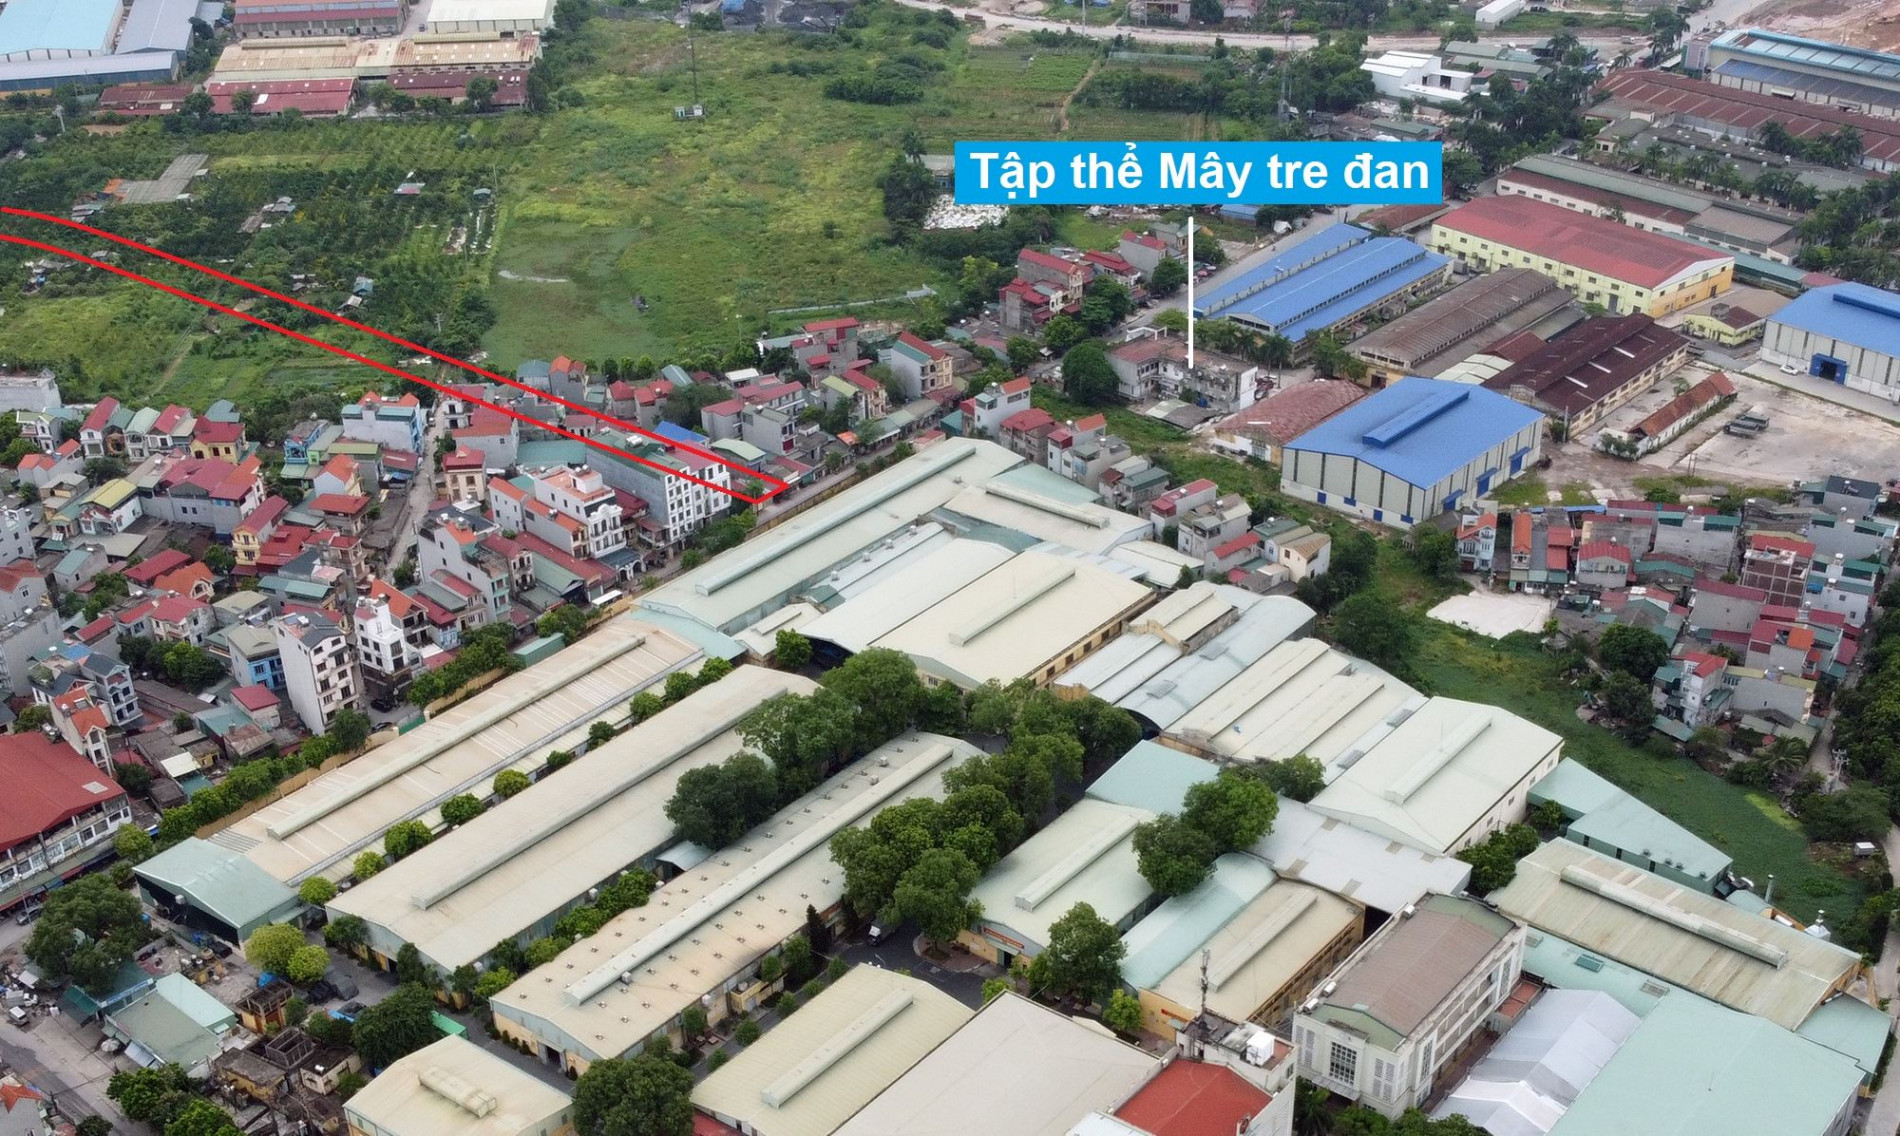 Đường sẽ mở theo quy hoạch ở xã Kiêu Kỵ, Gia Lâm, Hà Nội (phần 3)